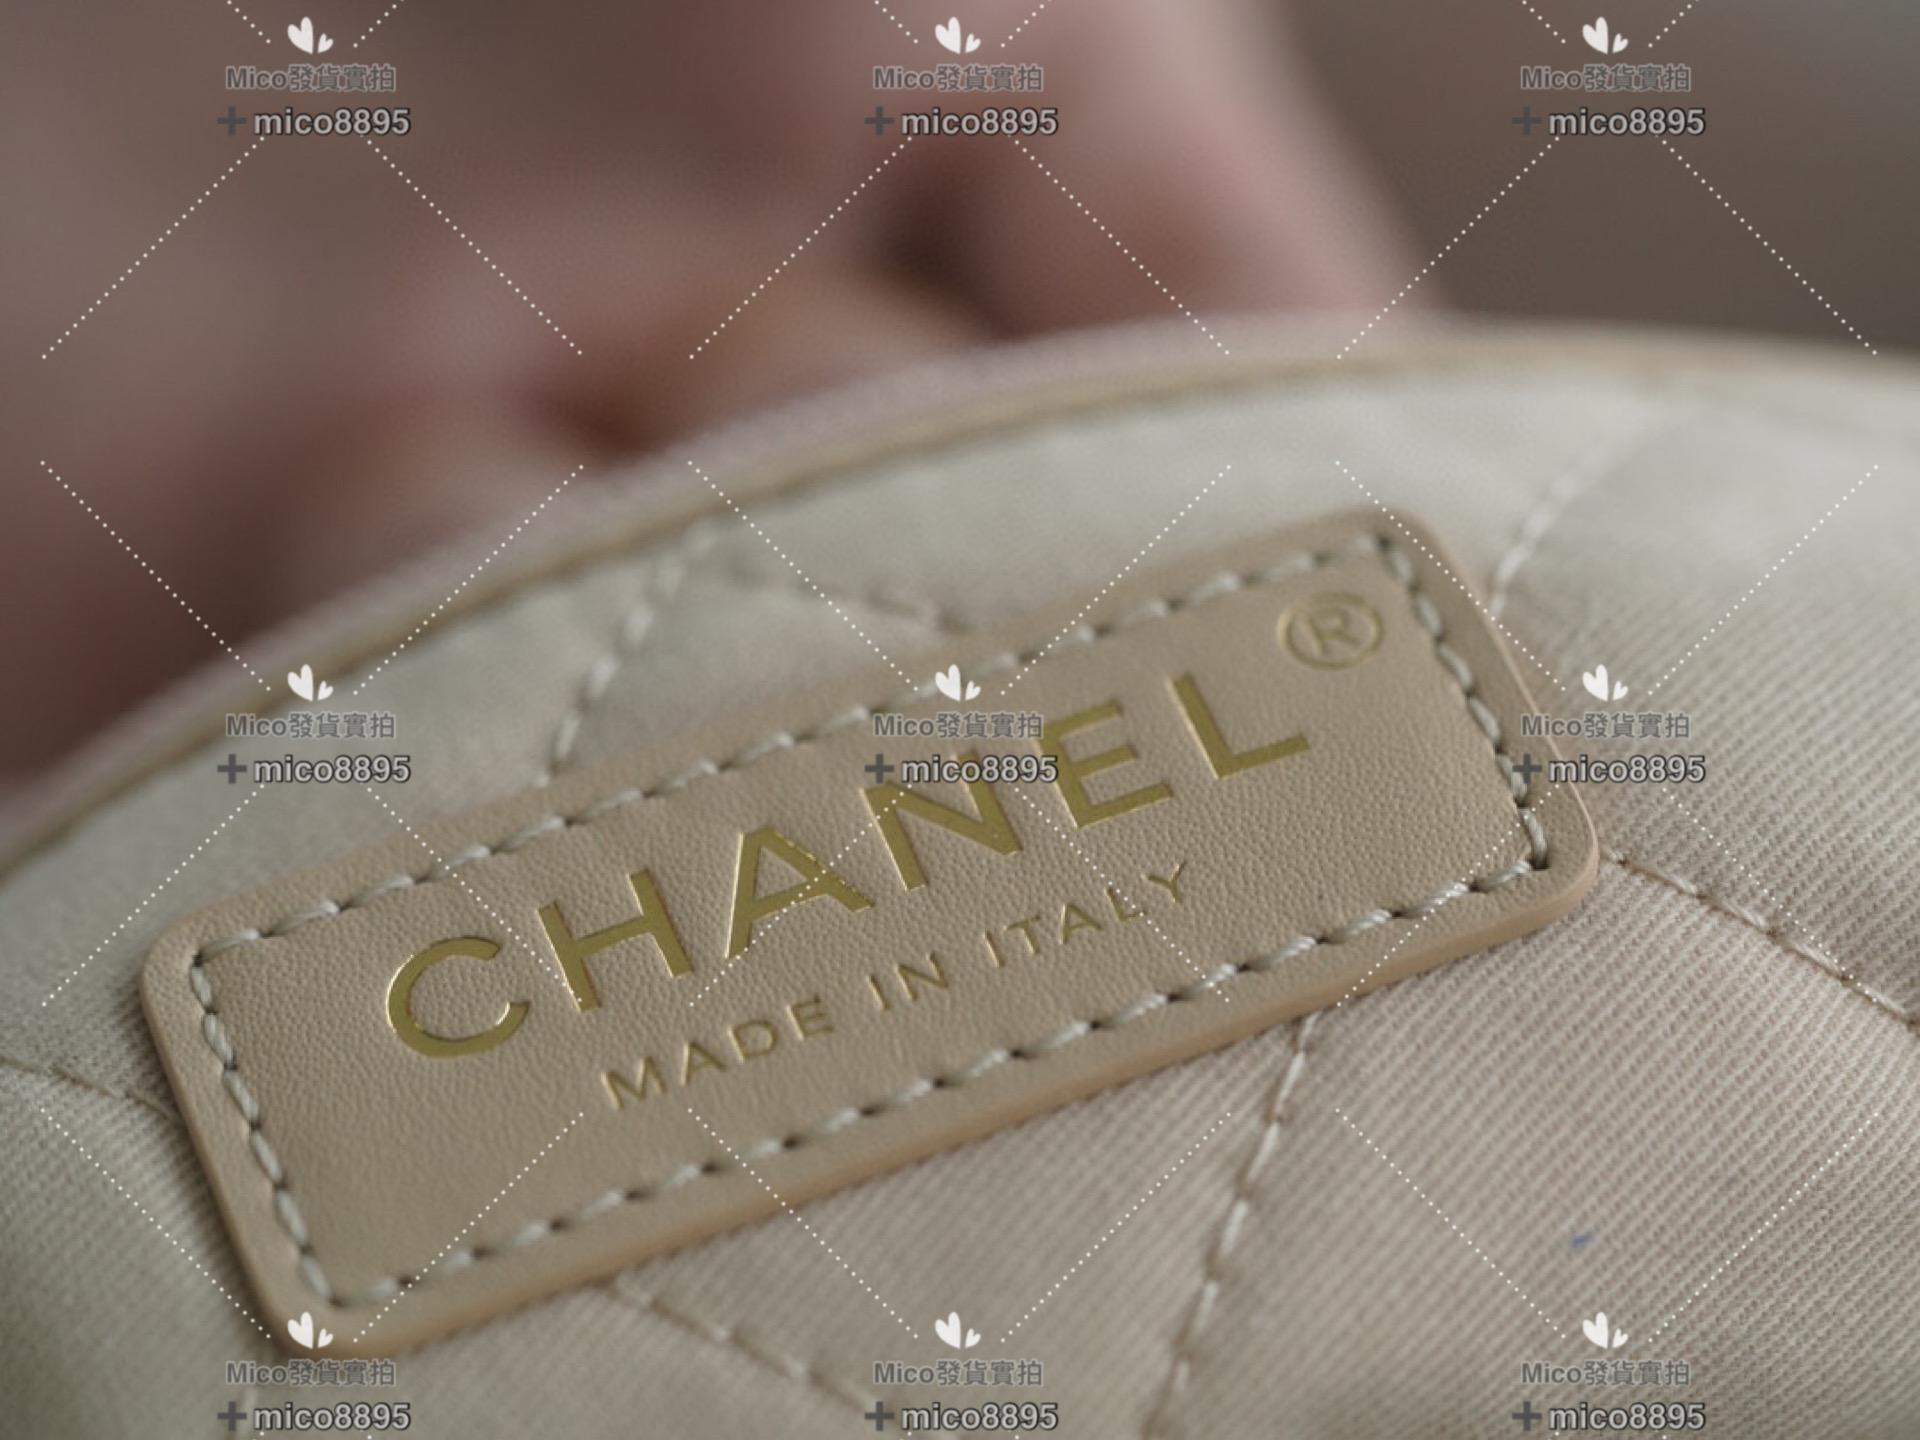 Chanel 新款 超實用𝟐𝟐手袋 中號/牛皮 購物包/通勤包/媽媽包